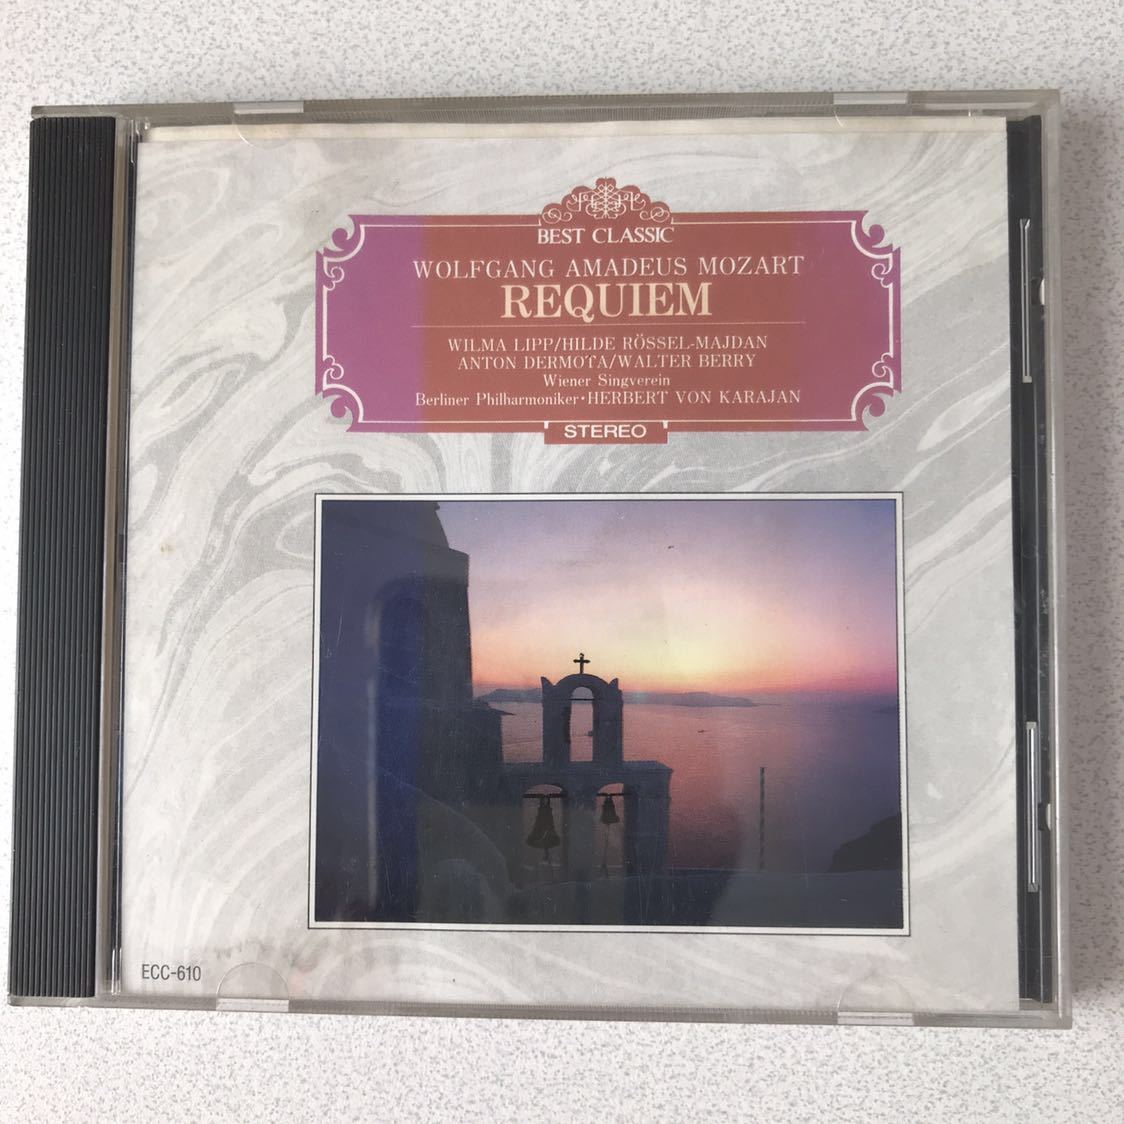 Promotion CD masterpiece/masterpiece/Karajan/Berlin Philimartart's last work "Requiem" has difficulty